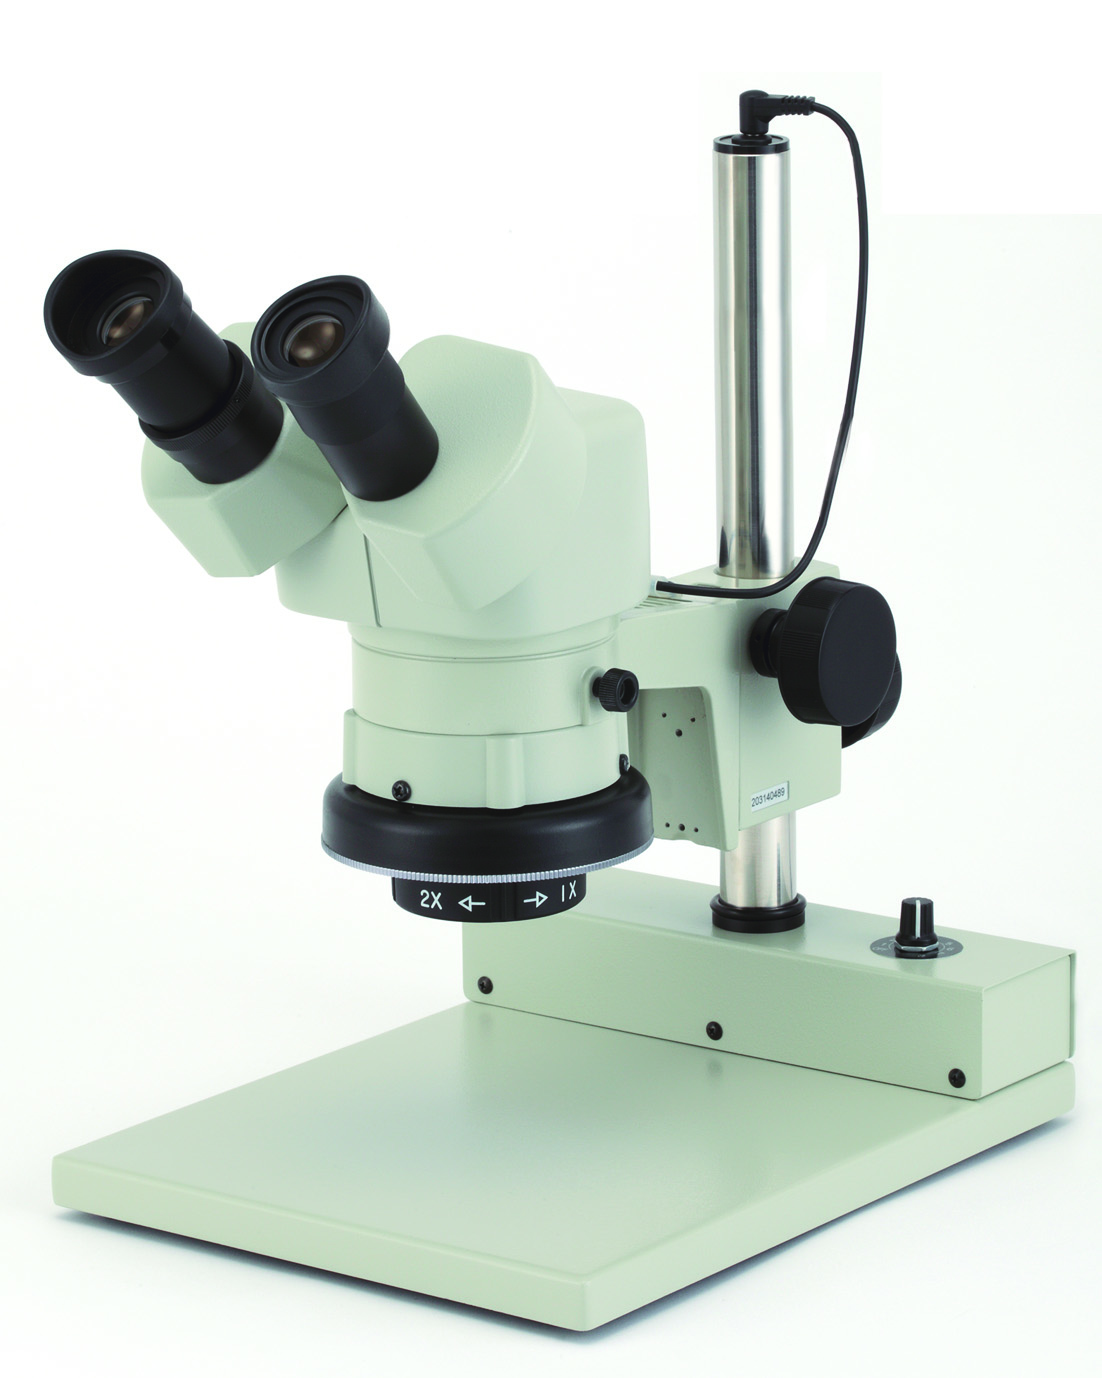 カートン光学 固定システム実体顕微鏡<双眼式>倍率20倍 LED落射調光照明